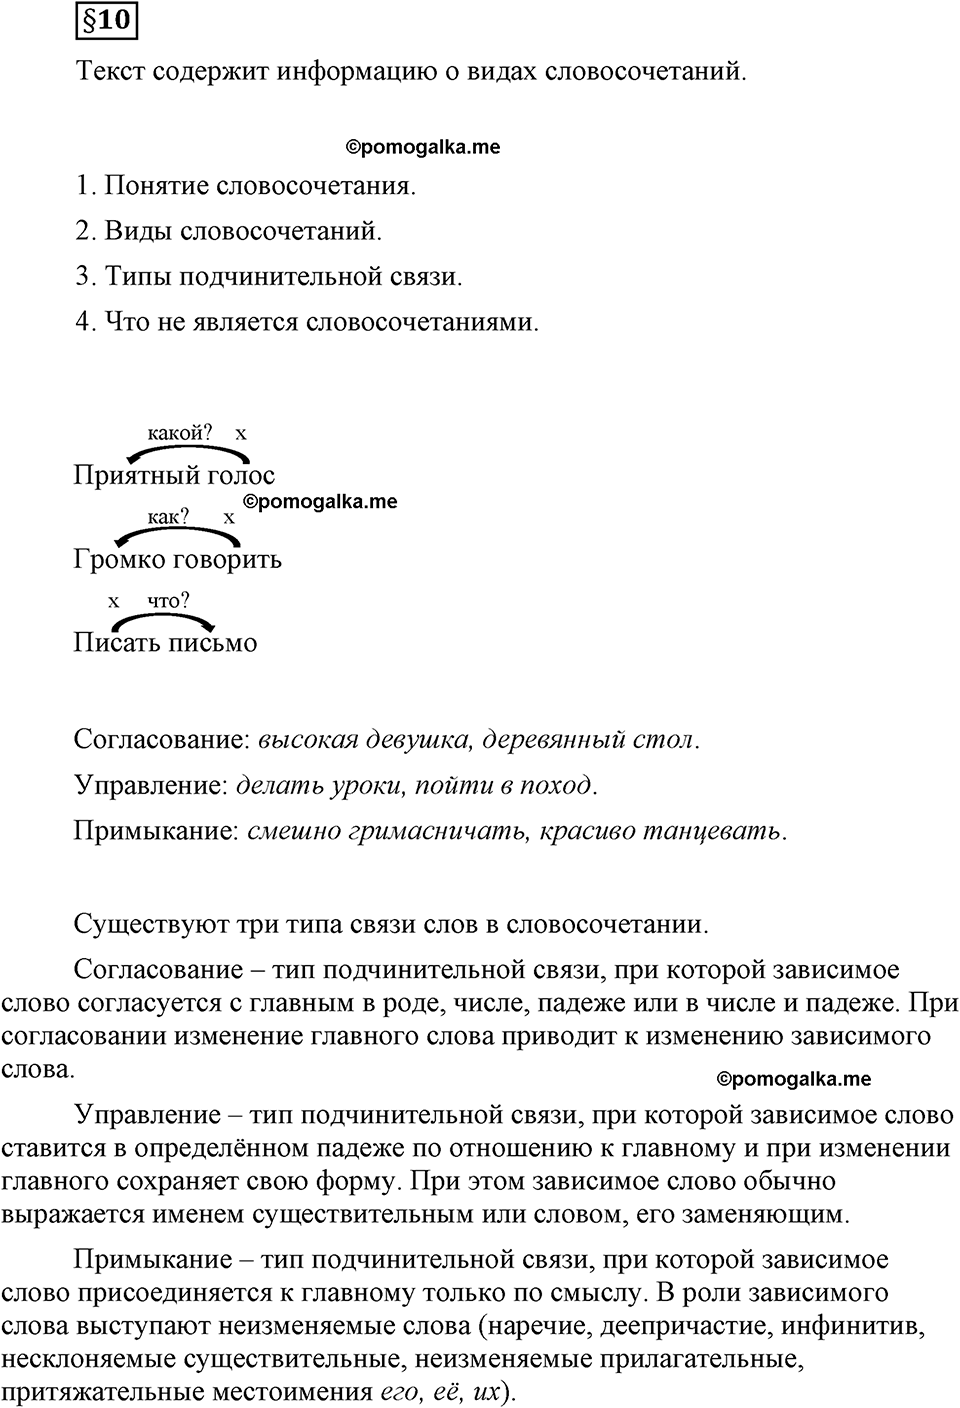 страница 76 вопросы к §10 русский язык 8 класс Львова, Львов 2014 год